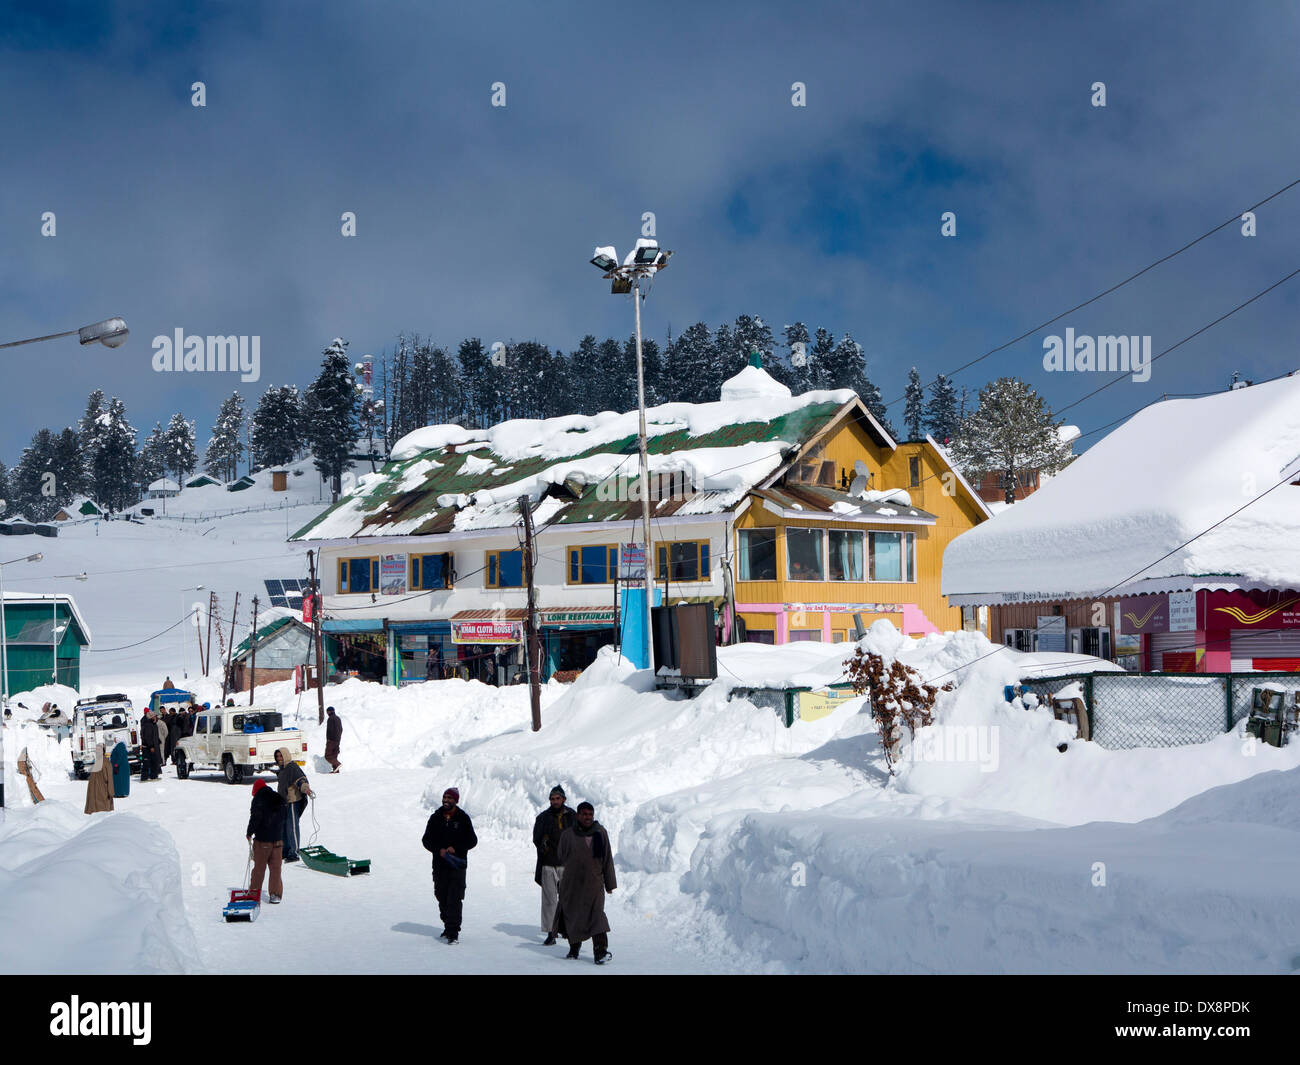 Indien, Kaschmir, Gulmarg, Himalaya Ski Resort, Geschäfte und Restaurants in starkem Schneefall fast begraben Stockfoto